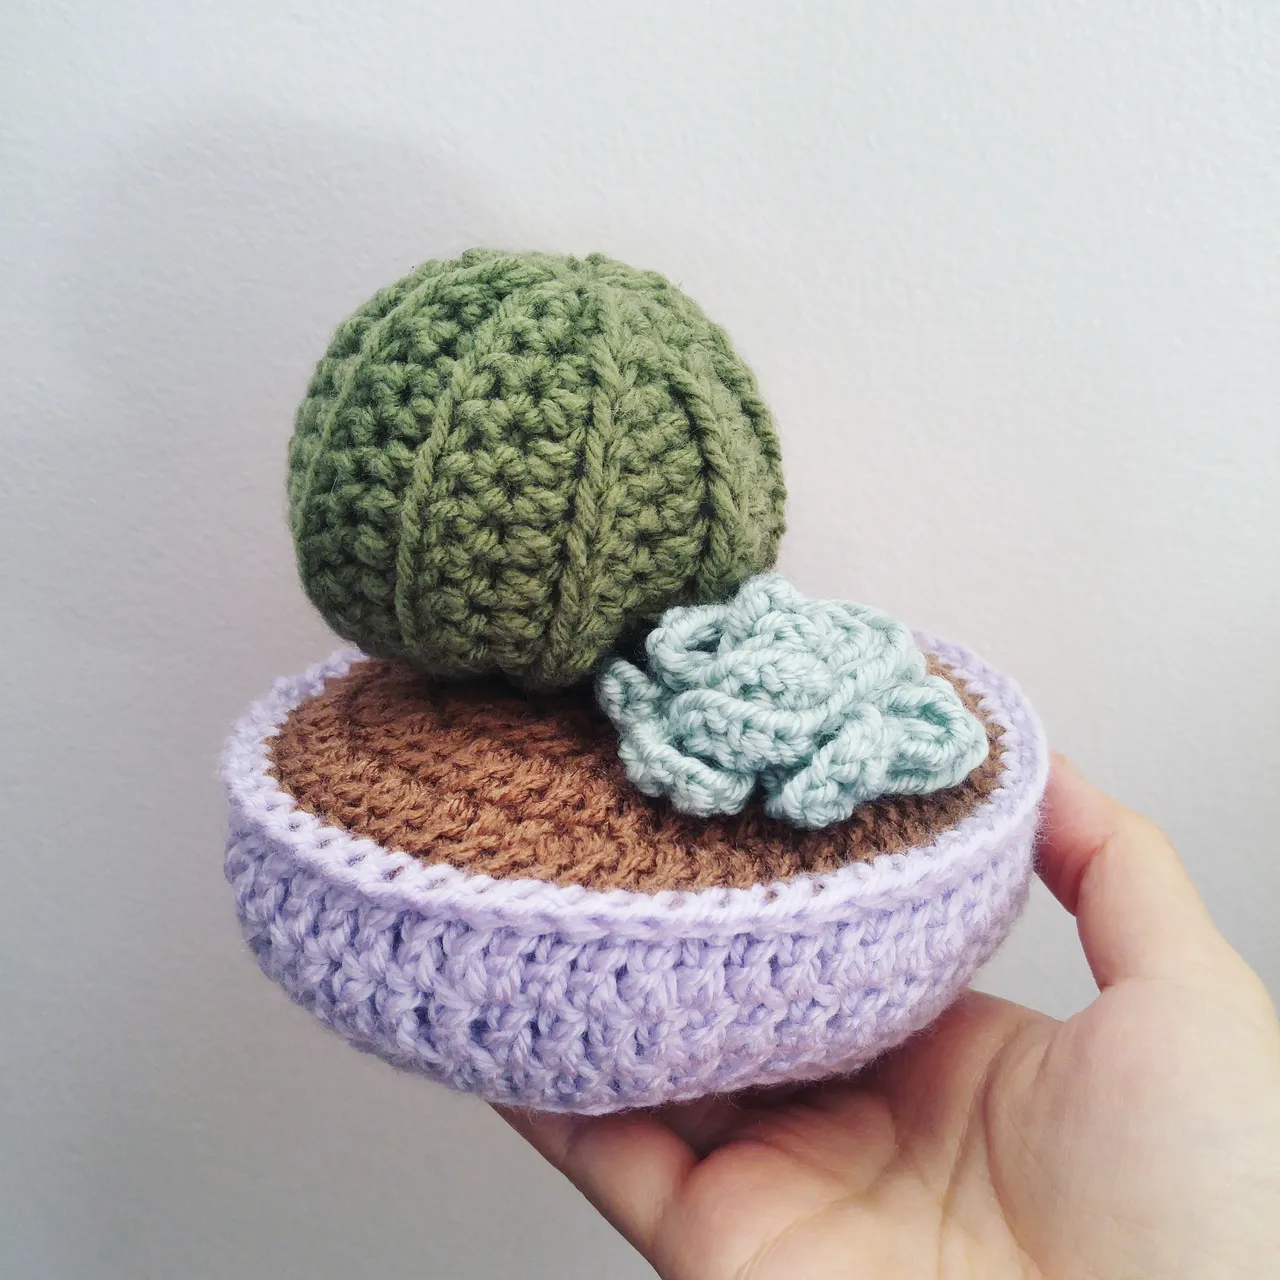 Crochet Succulent Arrangements photo 1